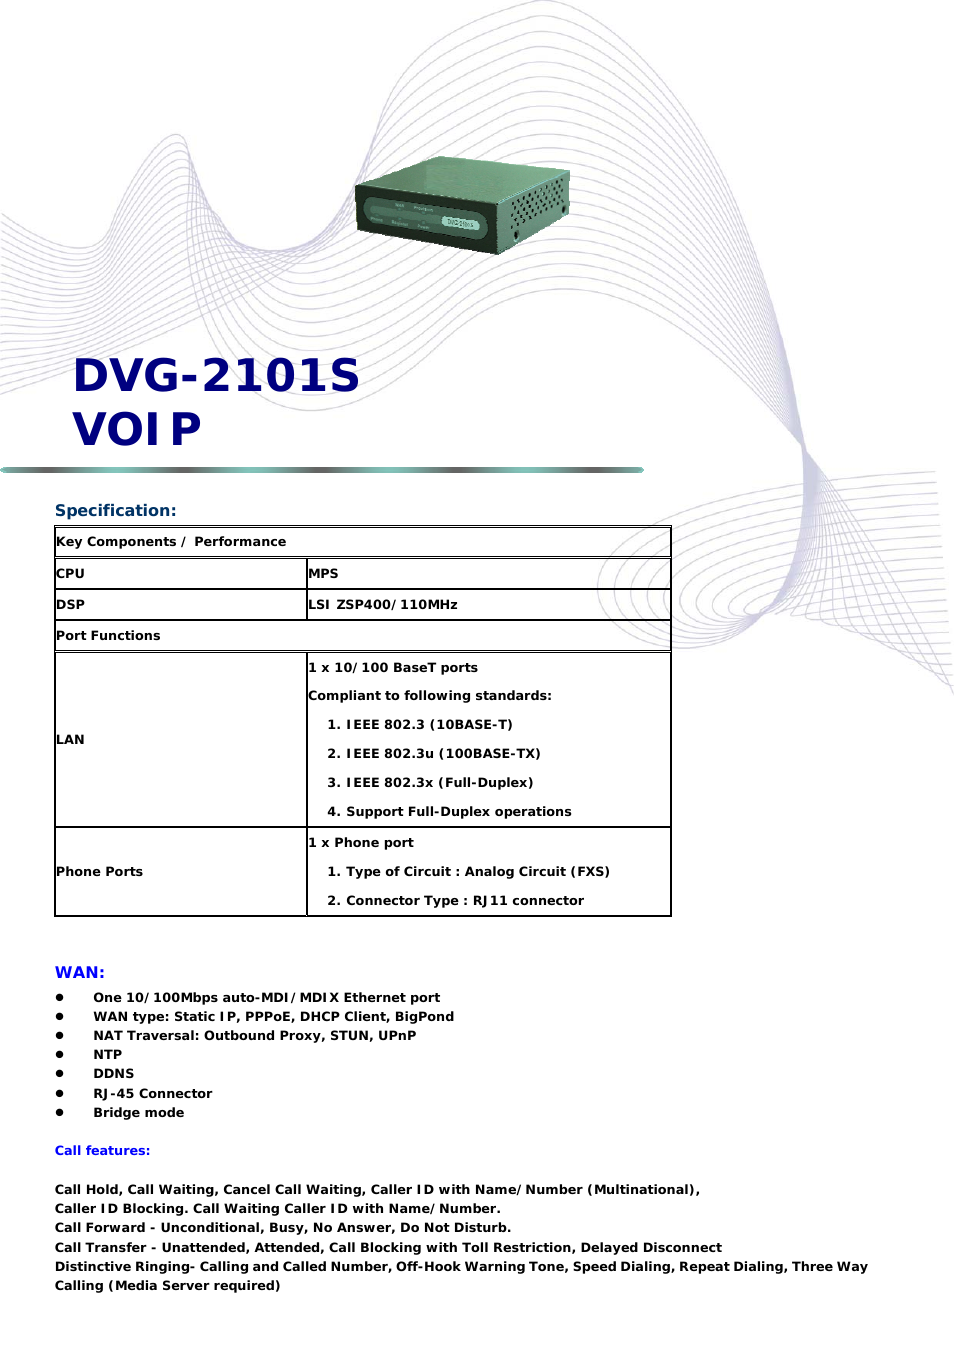 DVG-2101S